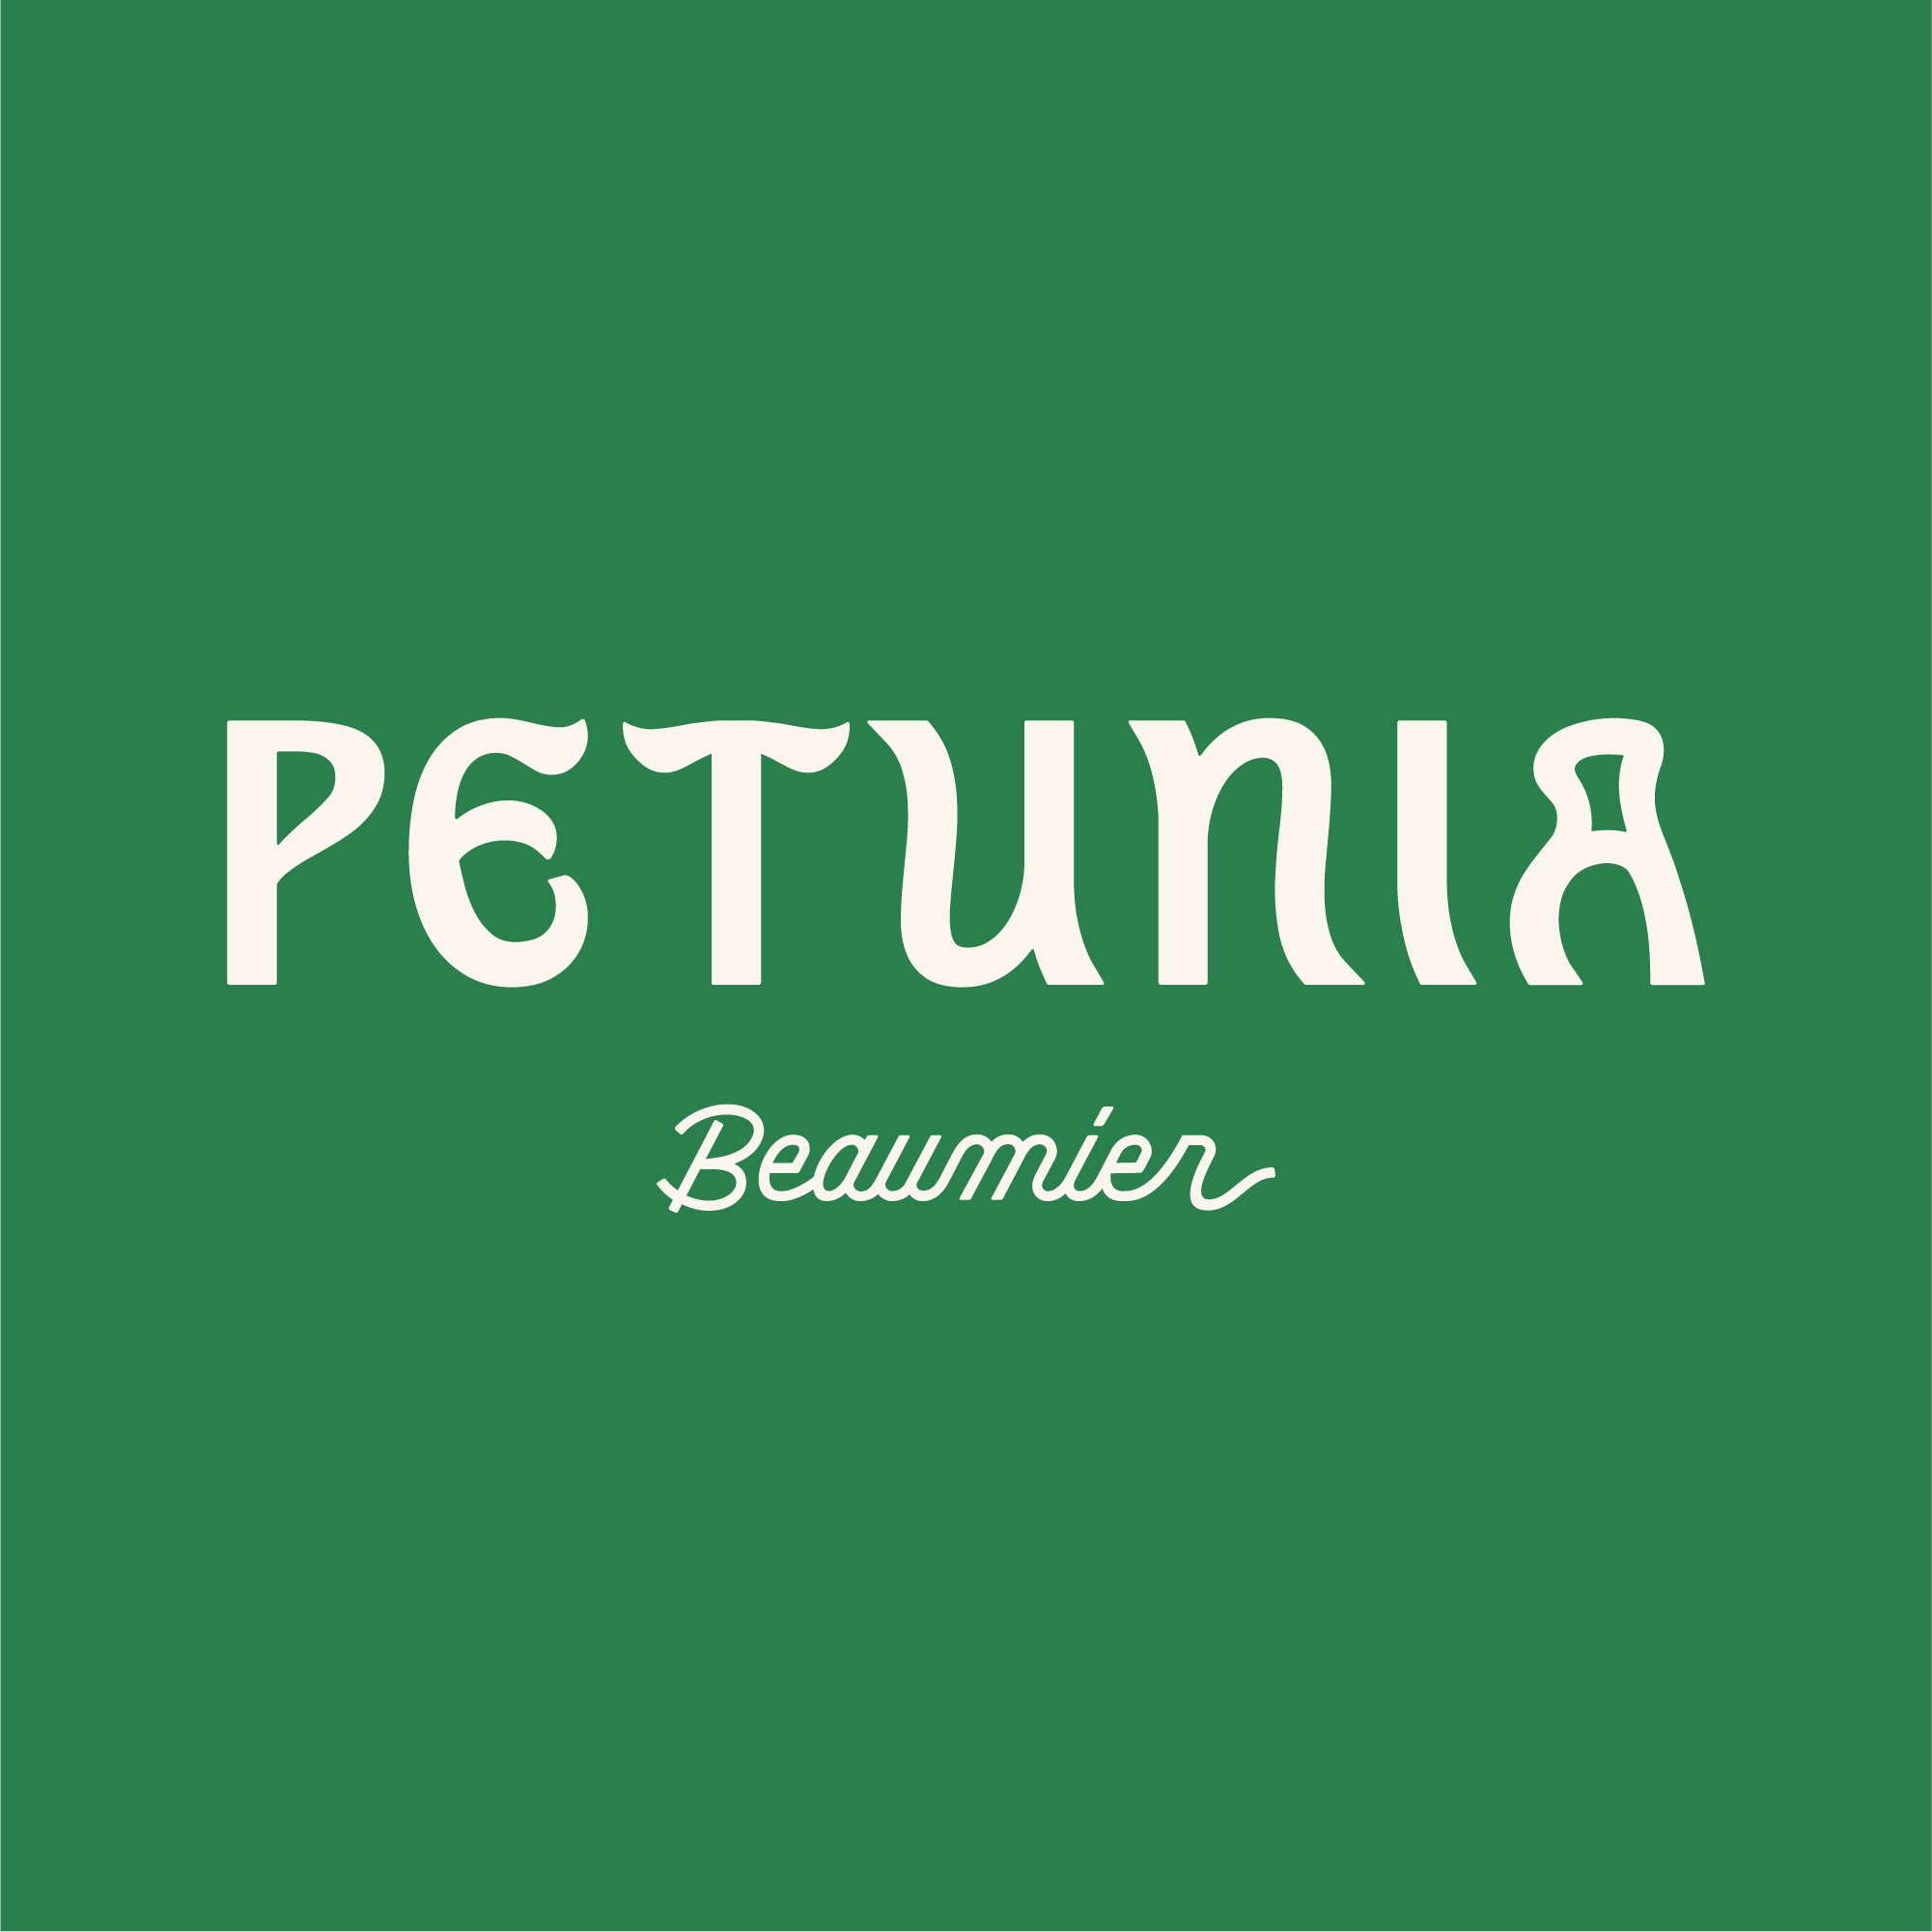 Petunia Ibiza, un hotel del grupo Beaumier